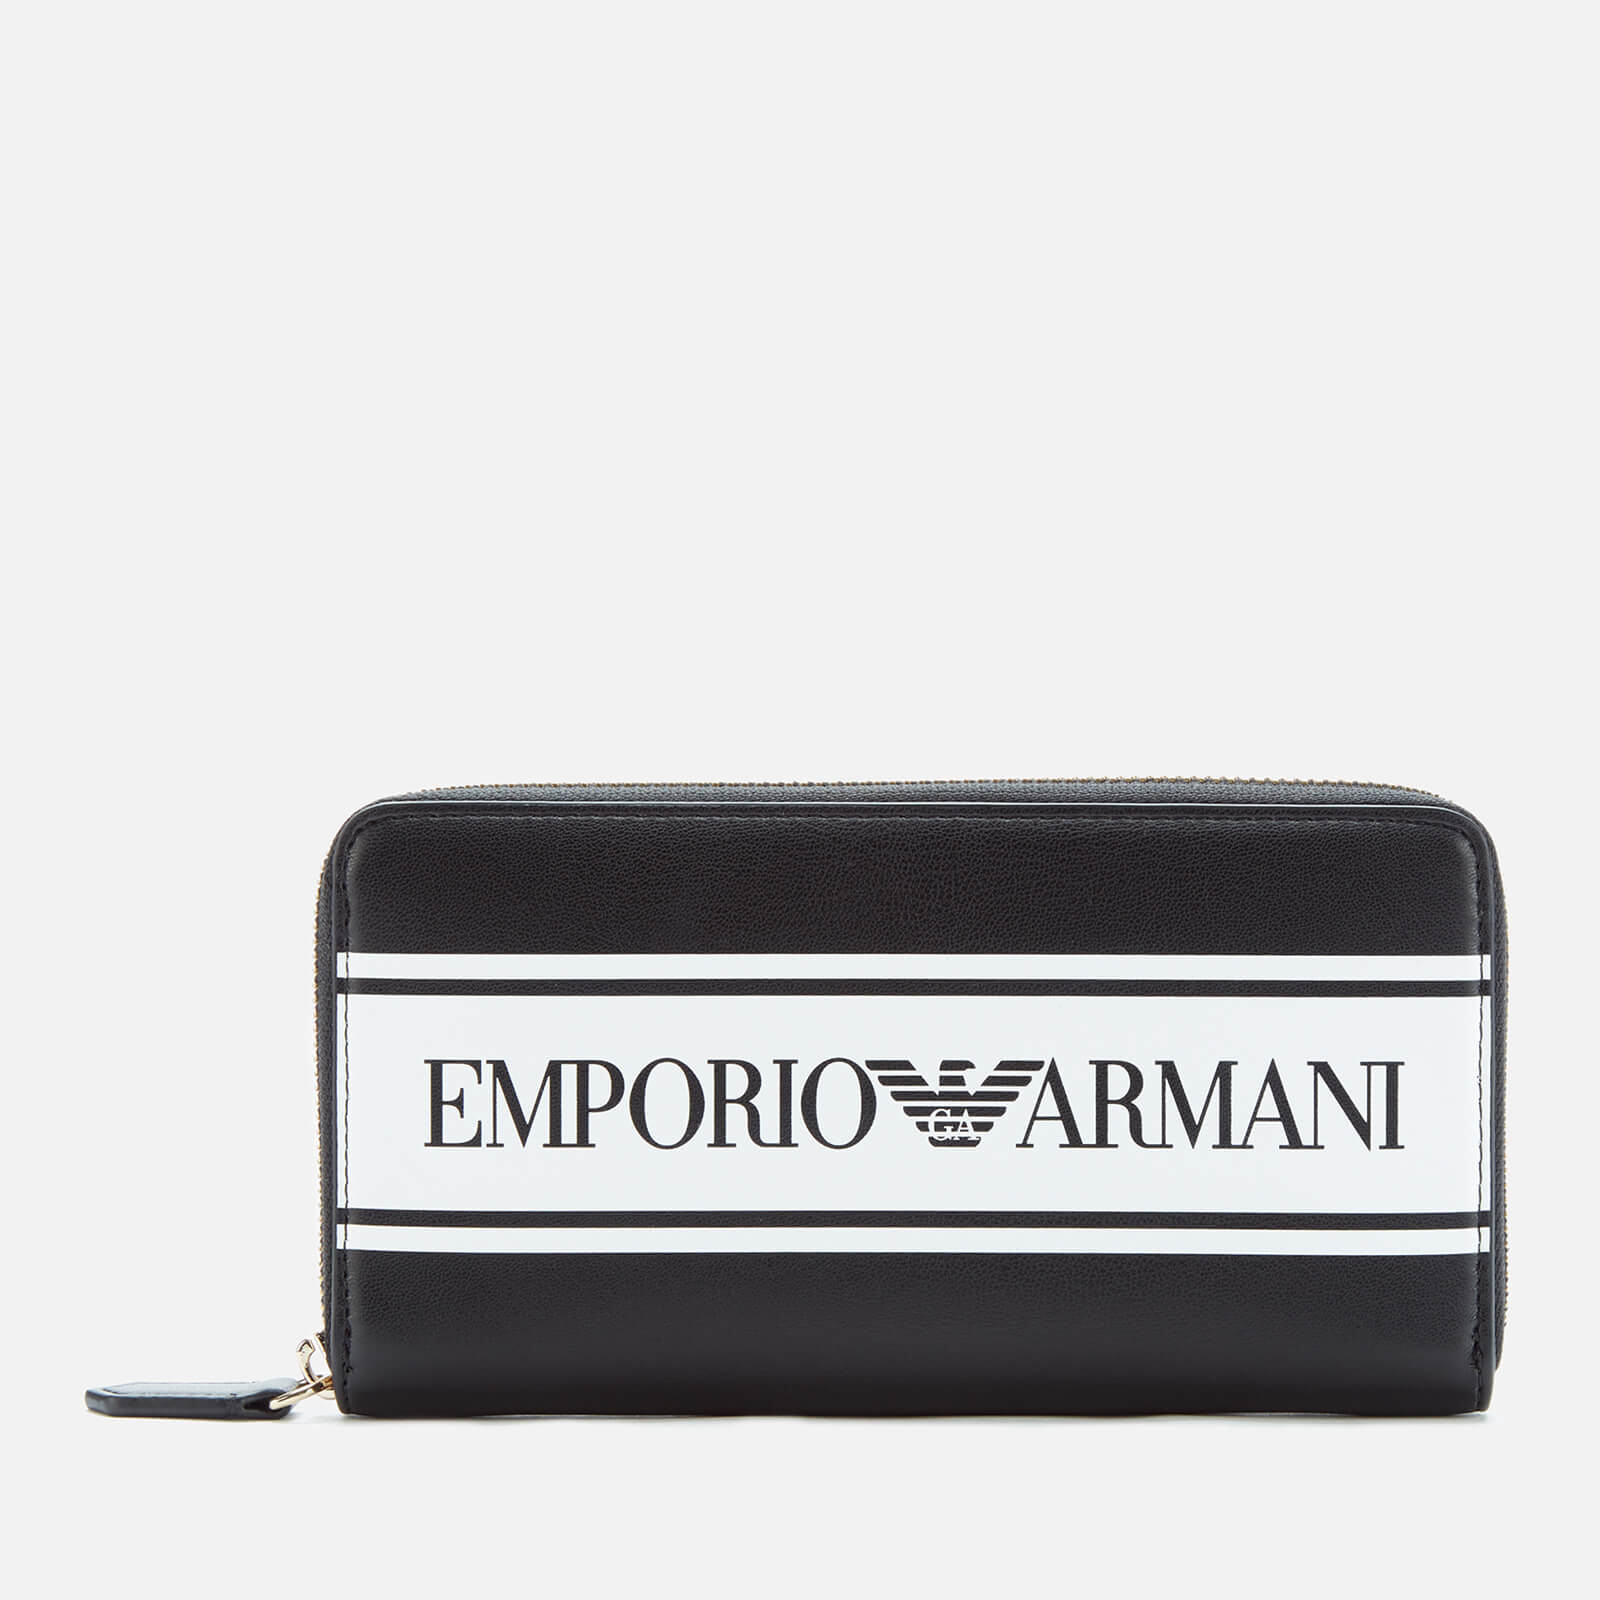 emporio armani wallet womens